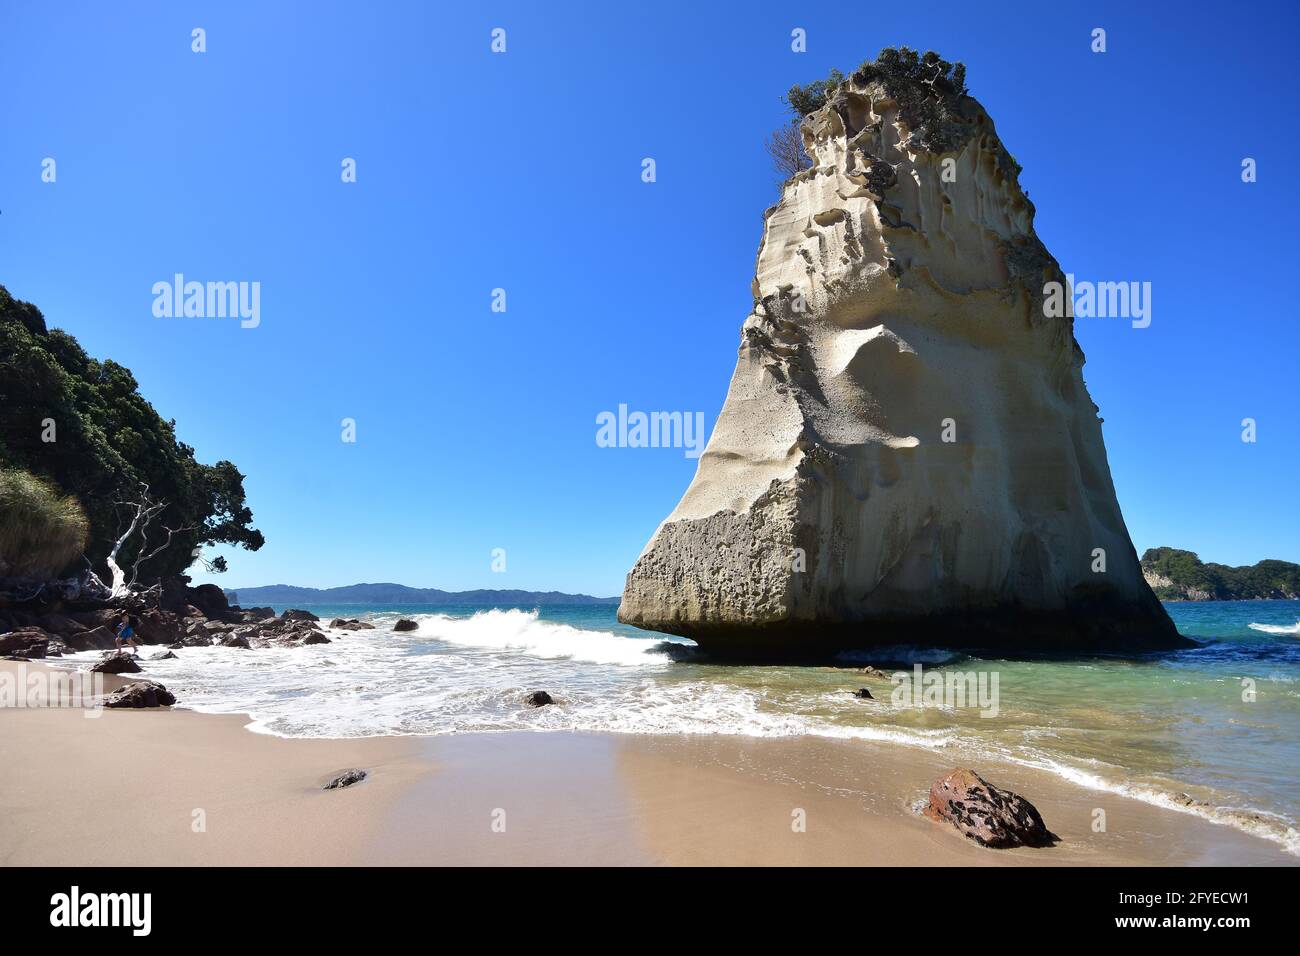 Massiccio blocco di roccia in acque poco profonde sulla spiaggia sabbiosa bagnata dal surf oceanico. Foto Stock